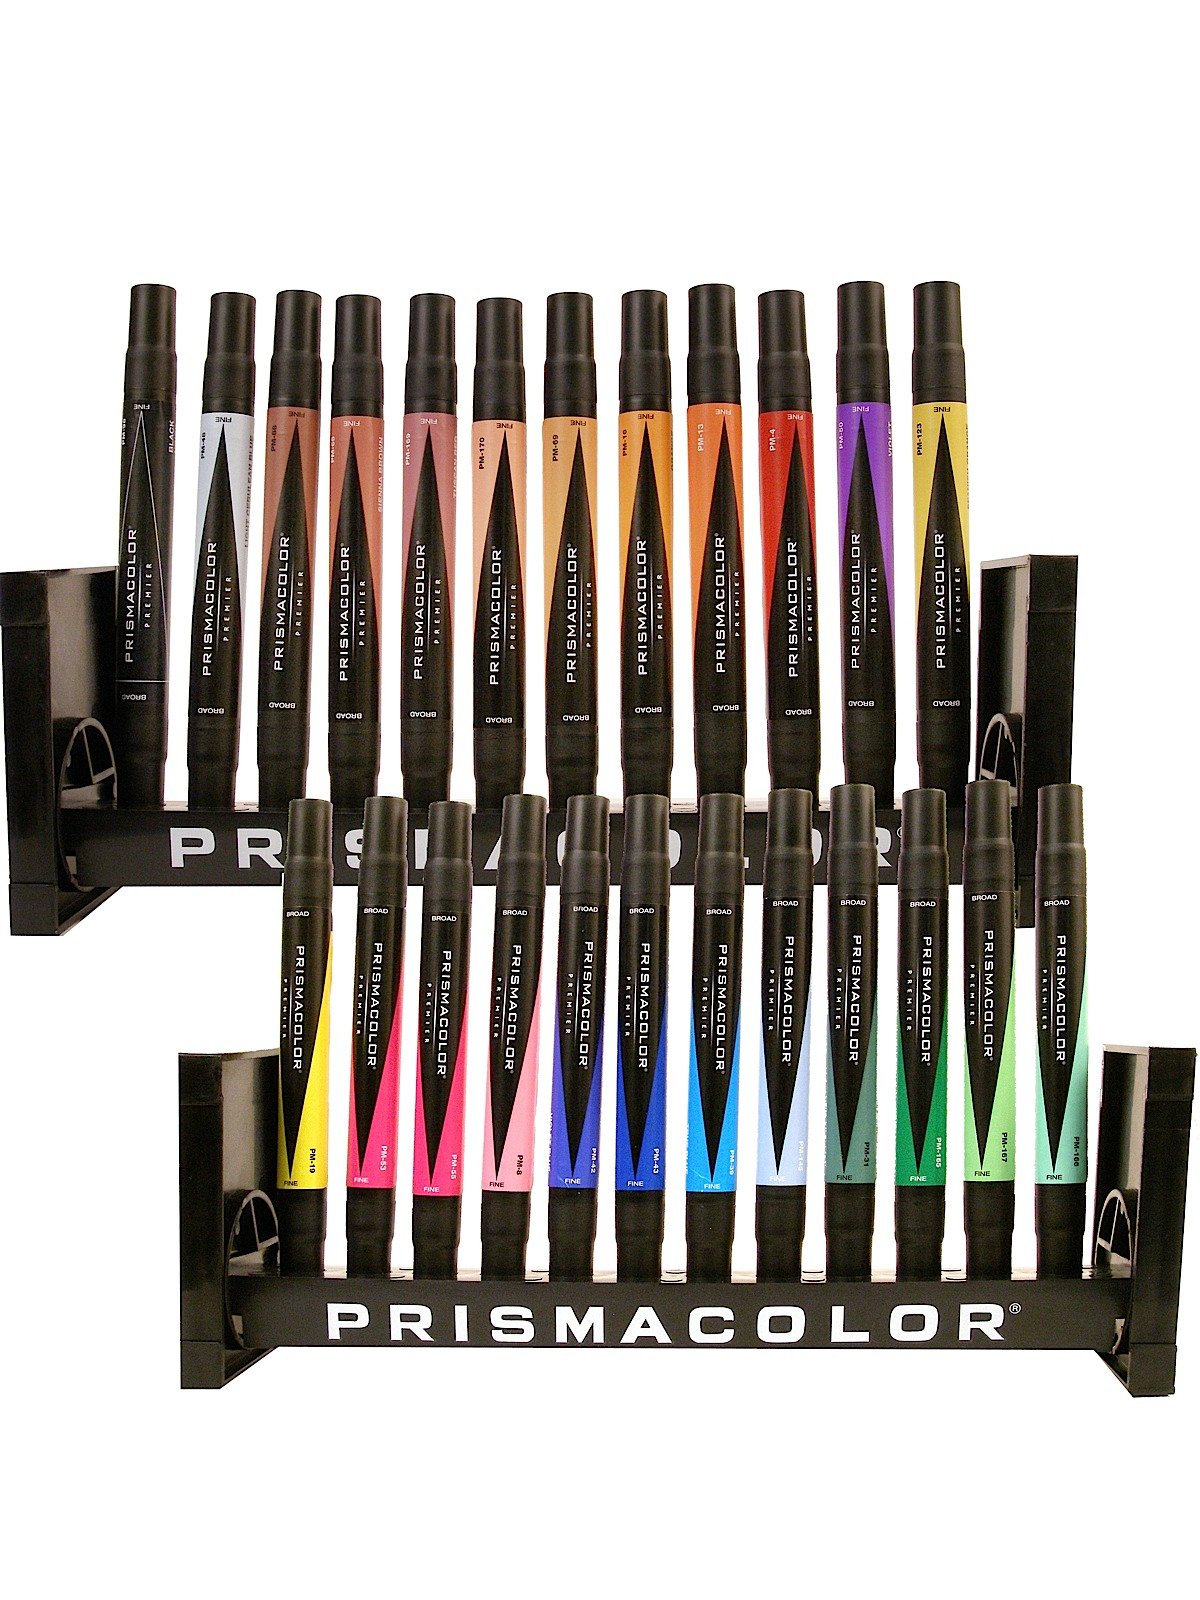 Prismacolor Markers  Prismacolor markers, Marker art, Marker storage